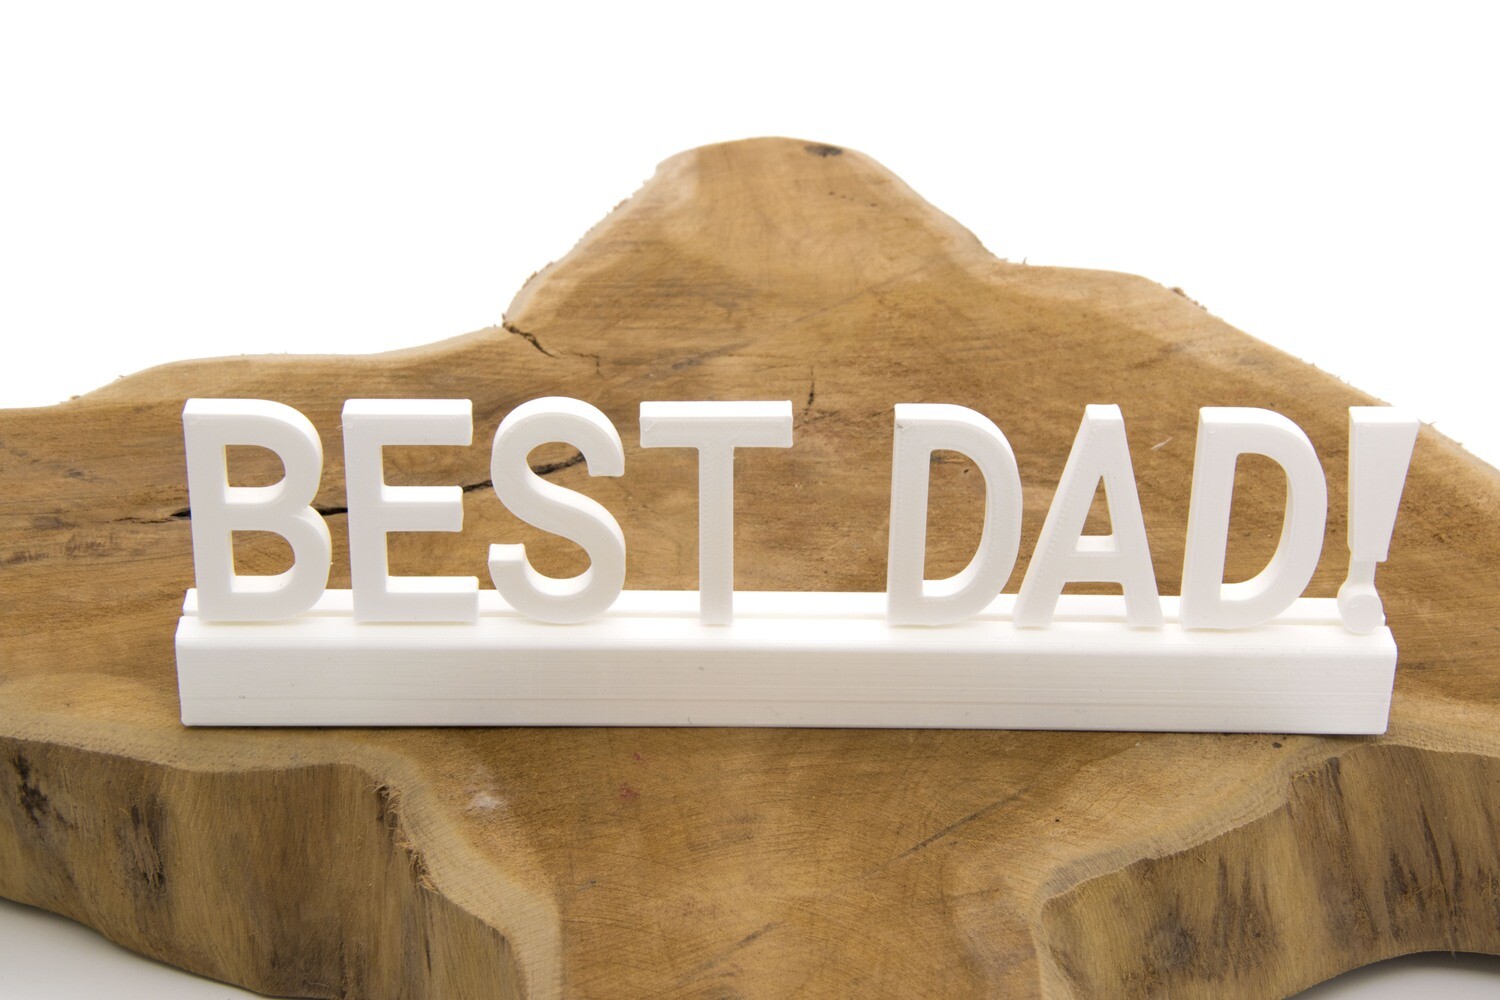 "Best dad"